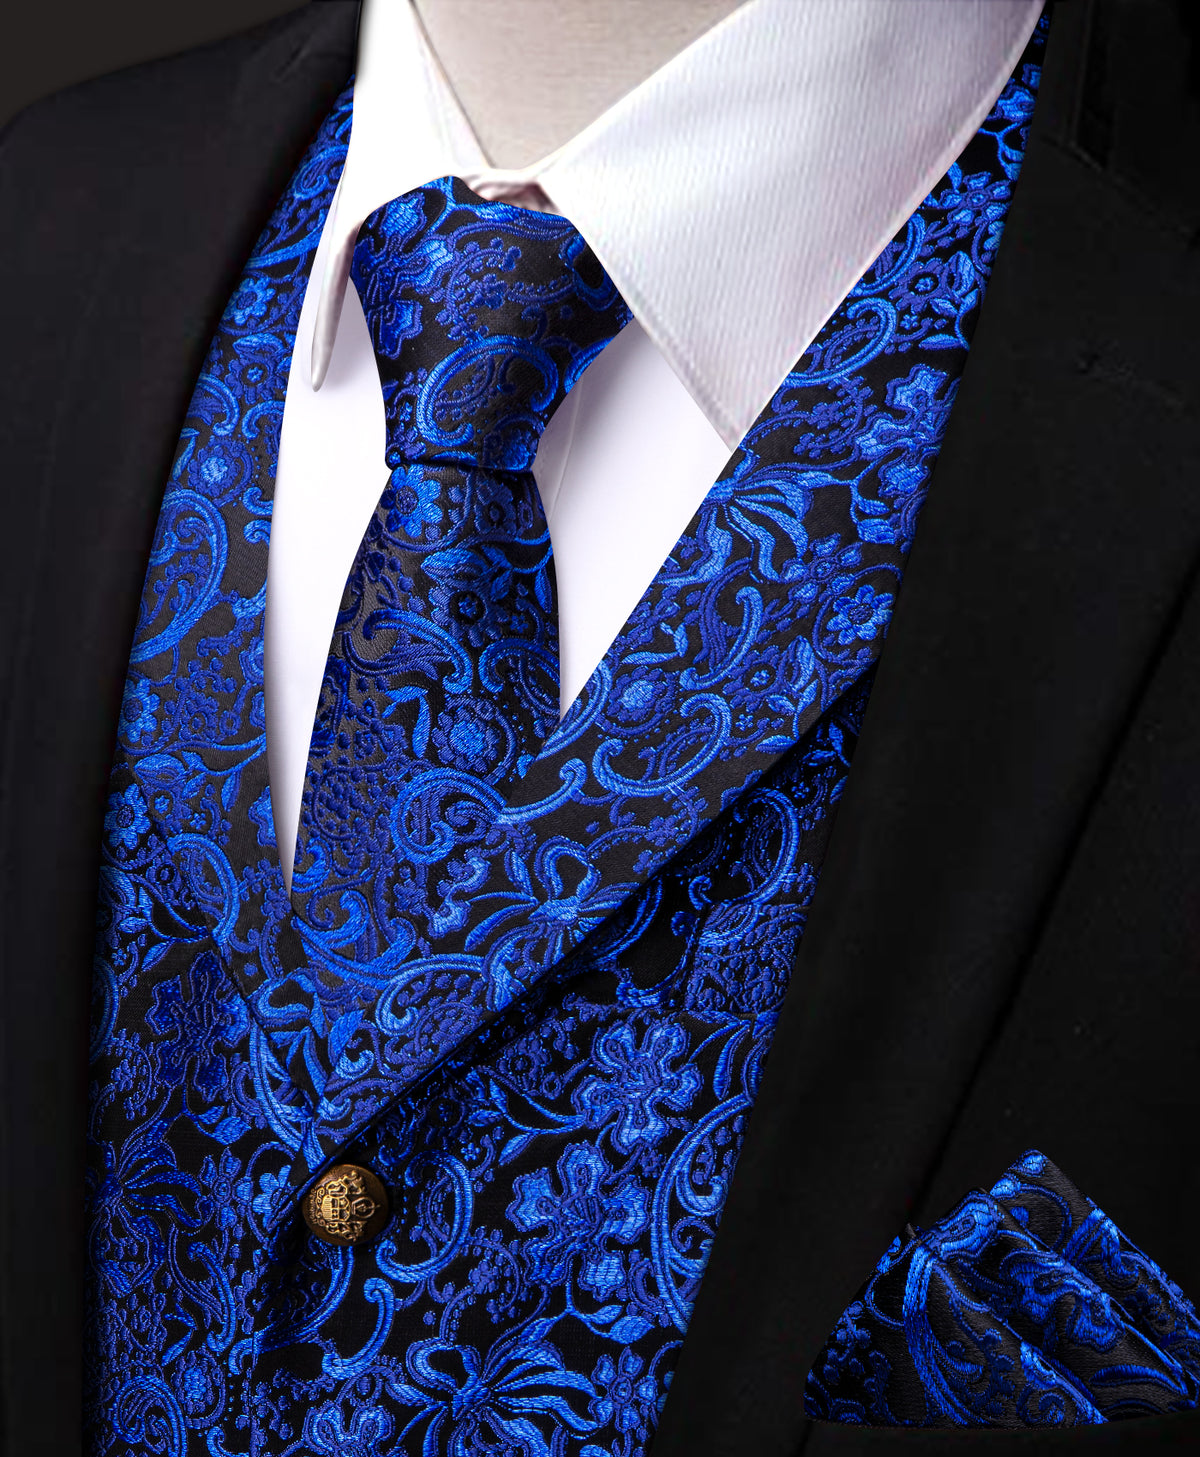 Blue Floral Silk Men's Vest Necktie Handkerchief Cufflinks Set